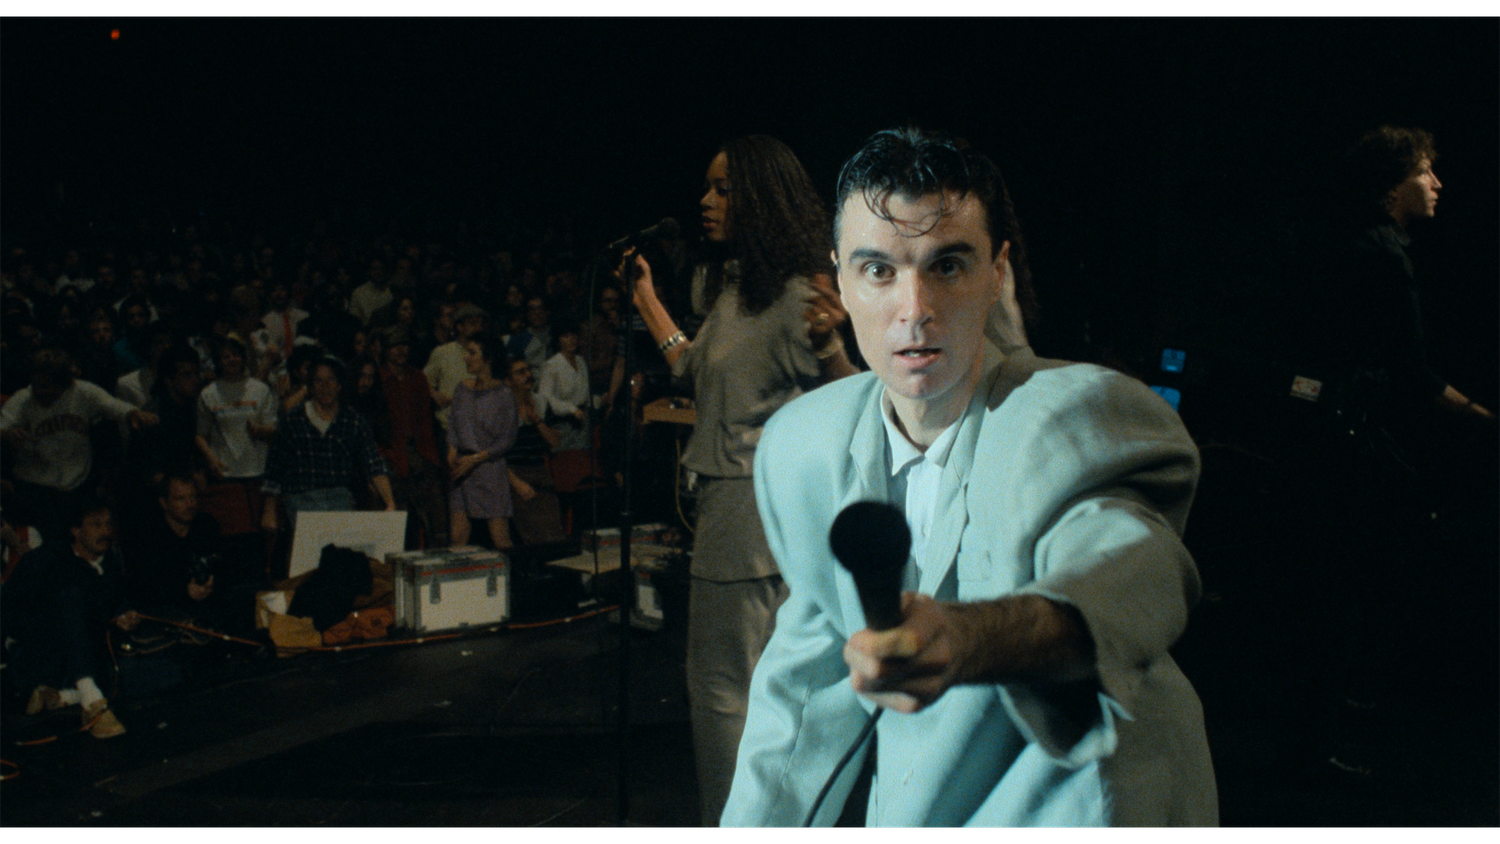 Auch nach mehr als 40 Jahren noch atemberaubend: "Stop Making Sense", der stilprägende Konzertfilm der Talking Heads.